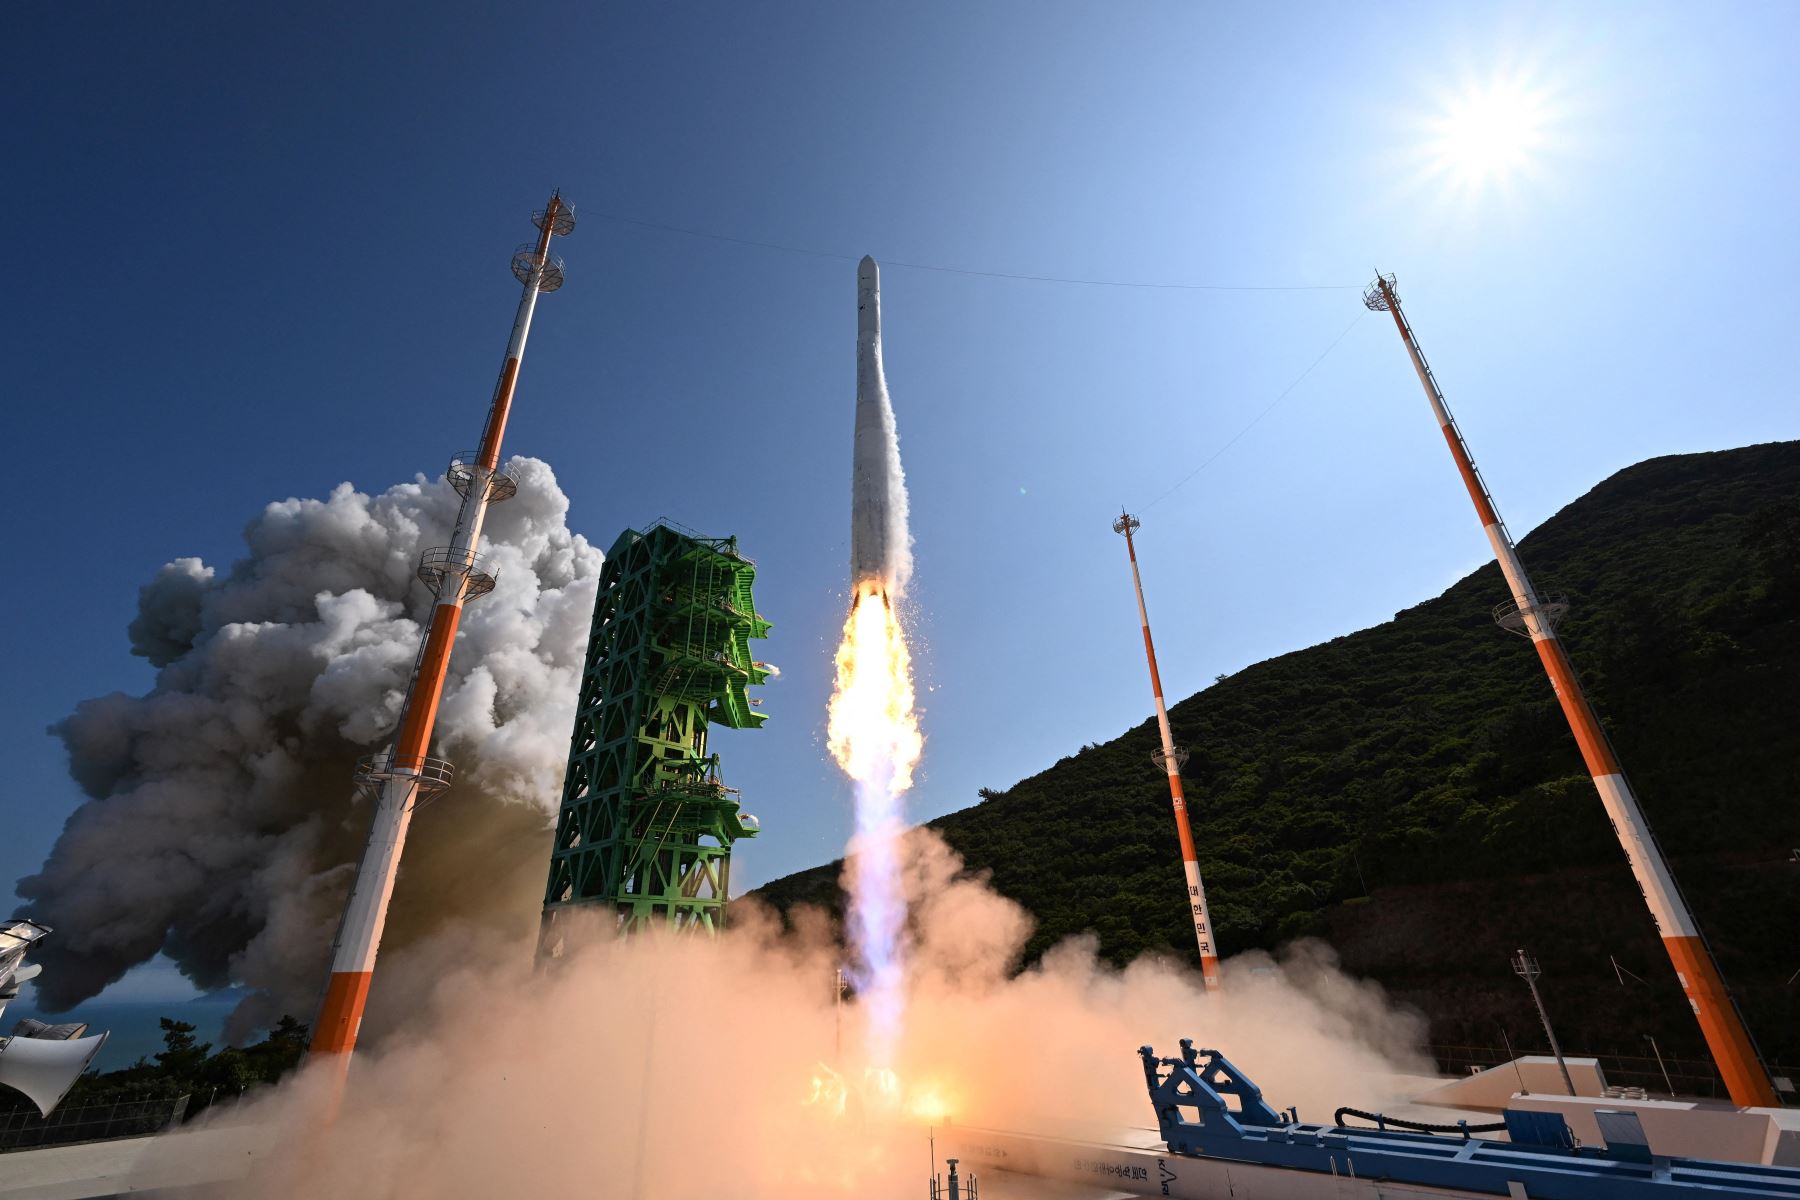 Corea de Sur lanzó con éxito su cohete espacial Nuri, un paso importante para la industria espacial del país asiático, que se convierte en uno de los diez del mundo capaces de poner un satélite en órbita con tecnología propia. Foto: AFP